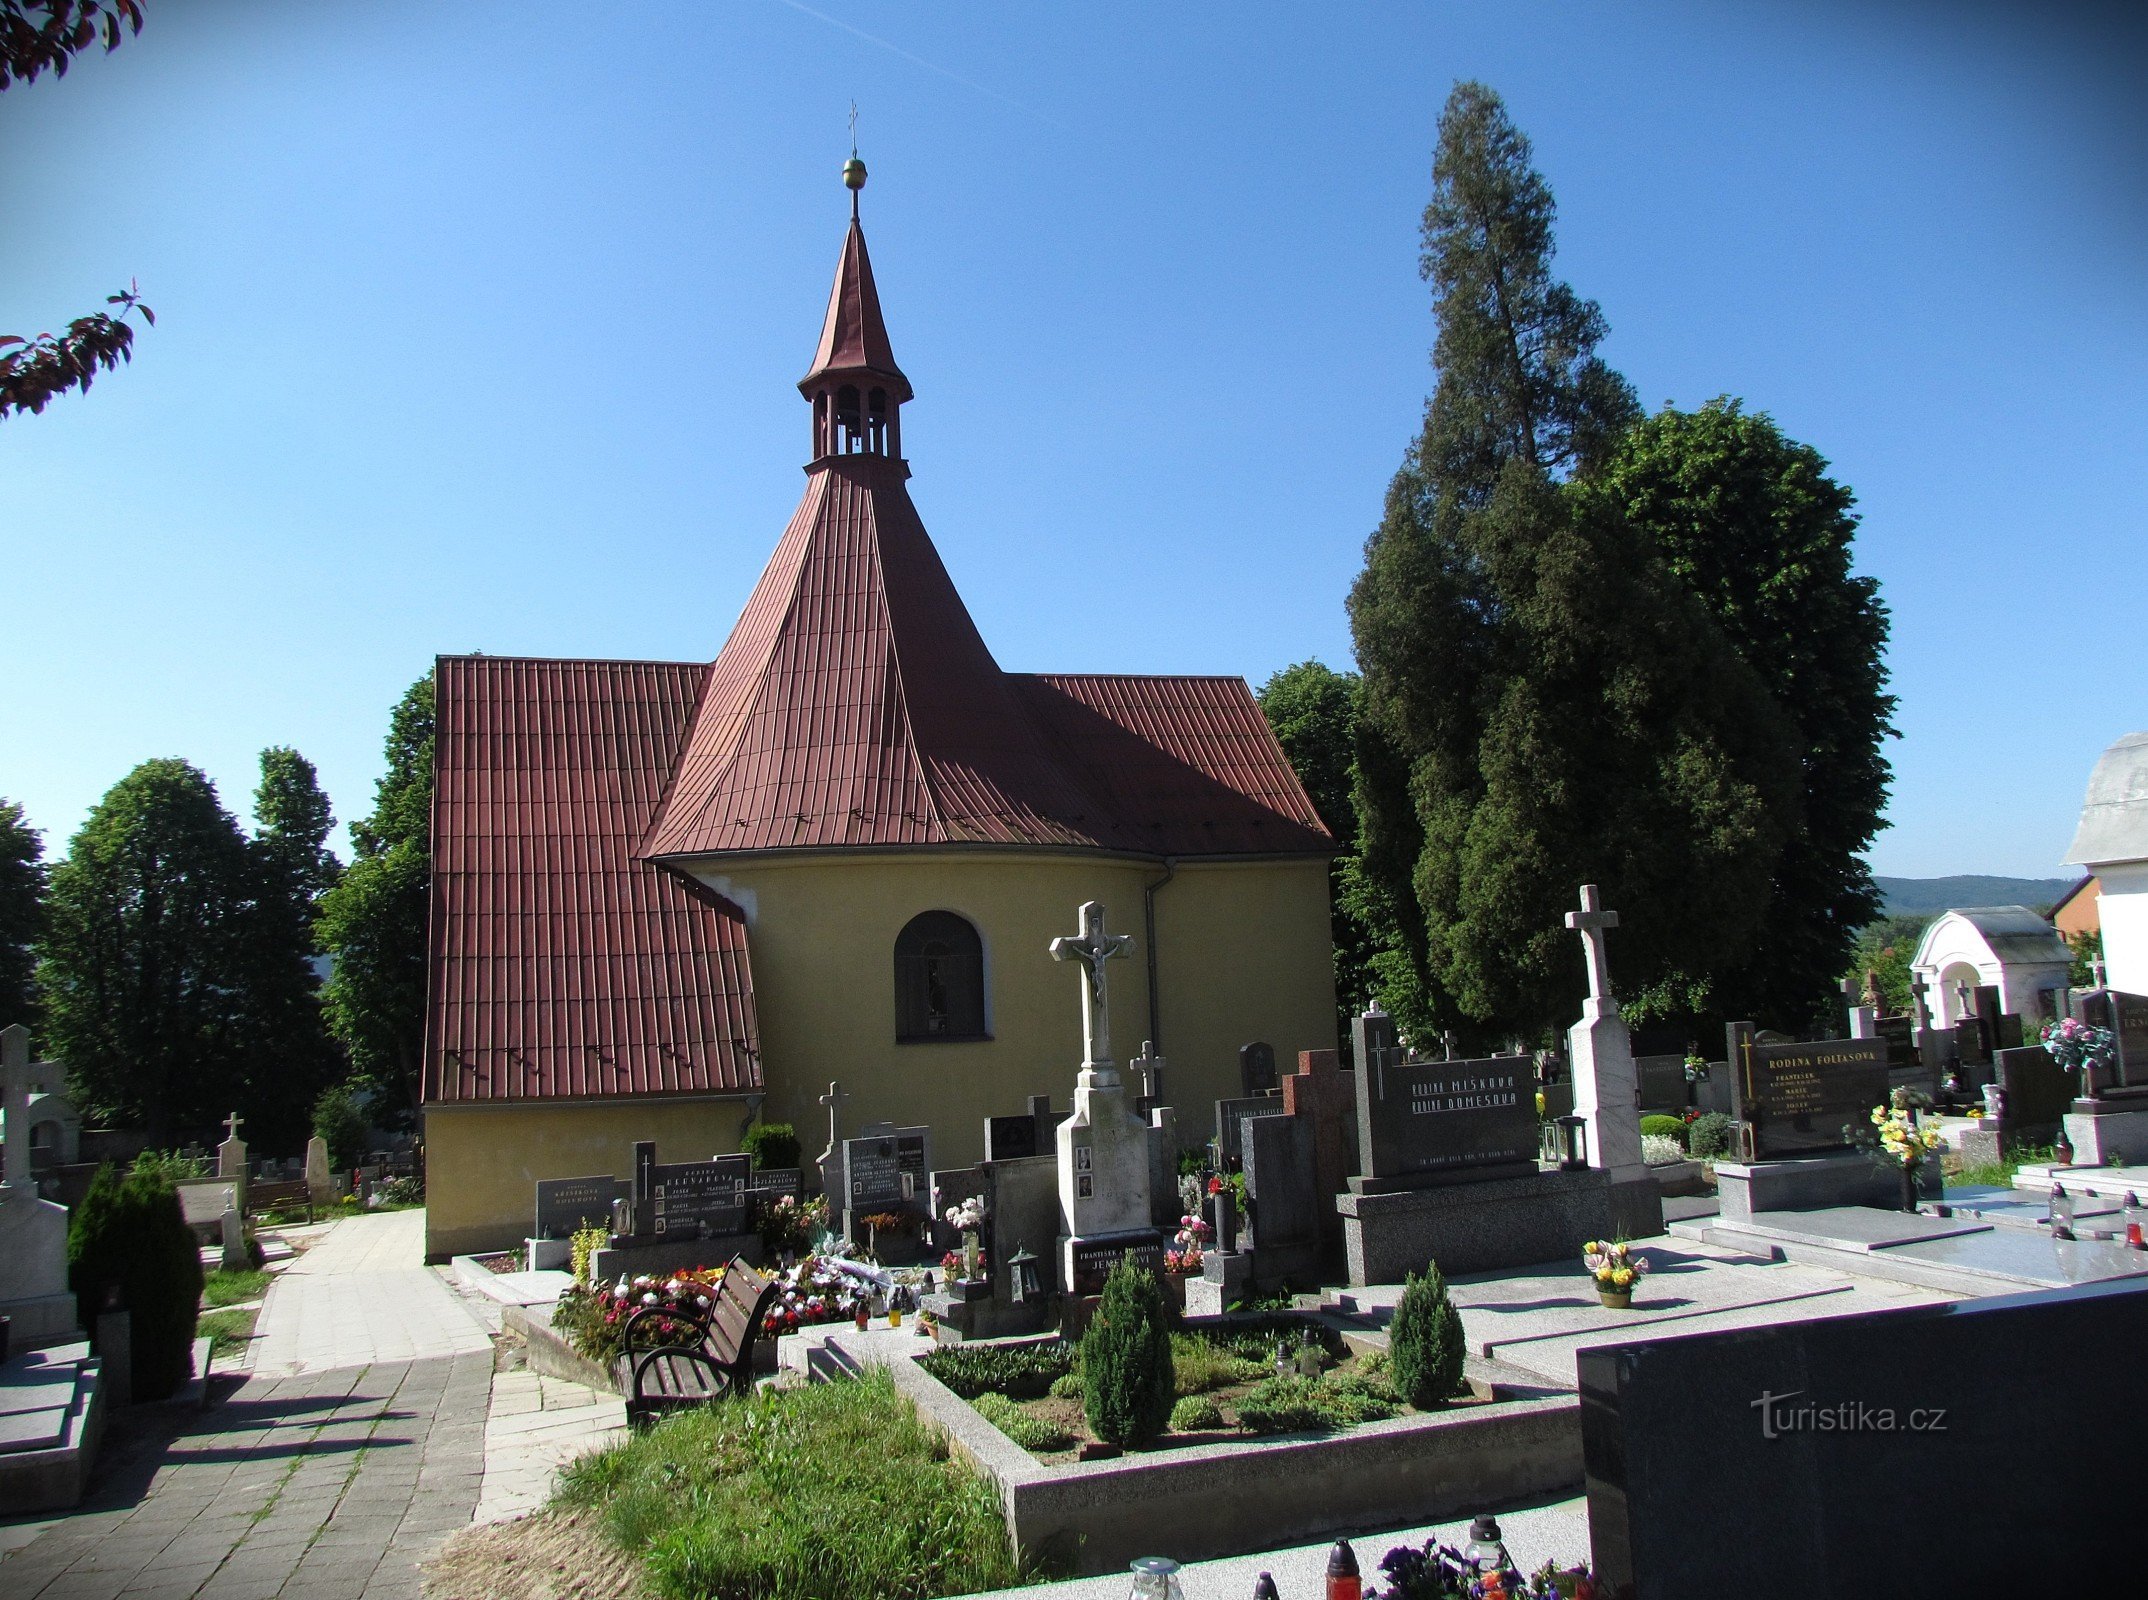 Drahotuše - St. Annes kapel og Korsvejen